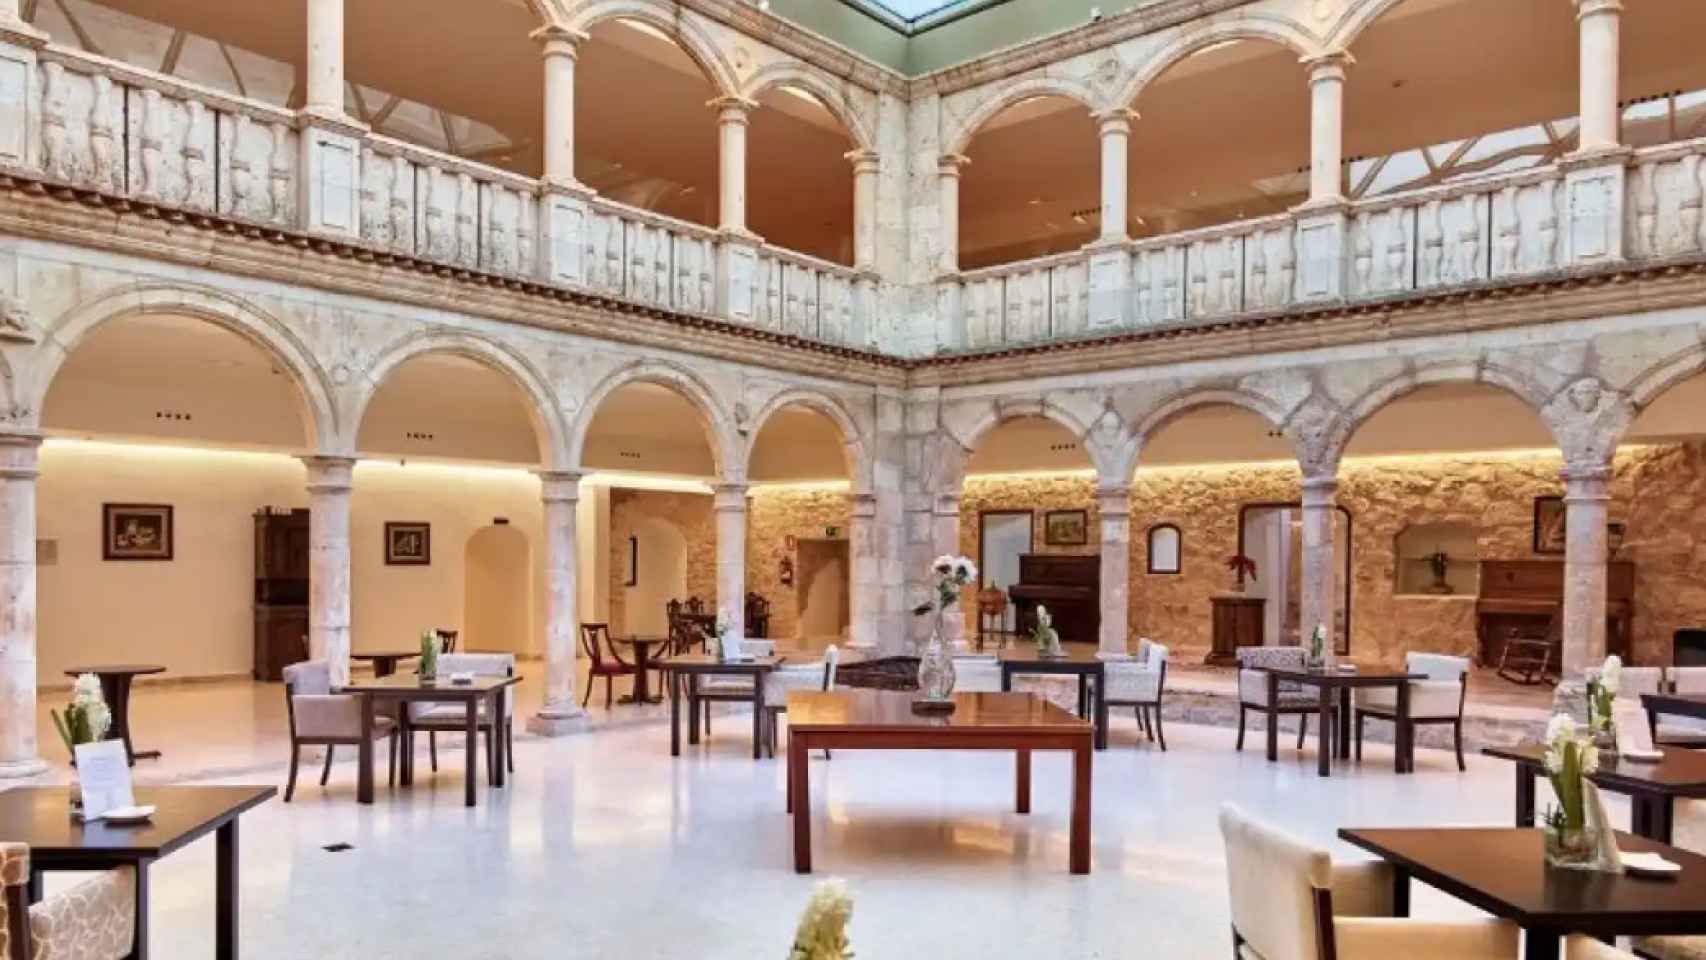 Hotel Spa Palacio del Infante Don Juan Manuel. Belmonte (Cuenca). Foto: Red de Hospederías de CLM.